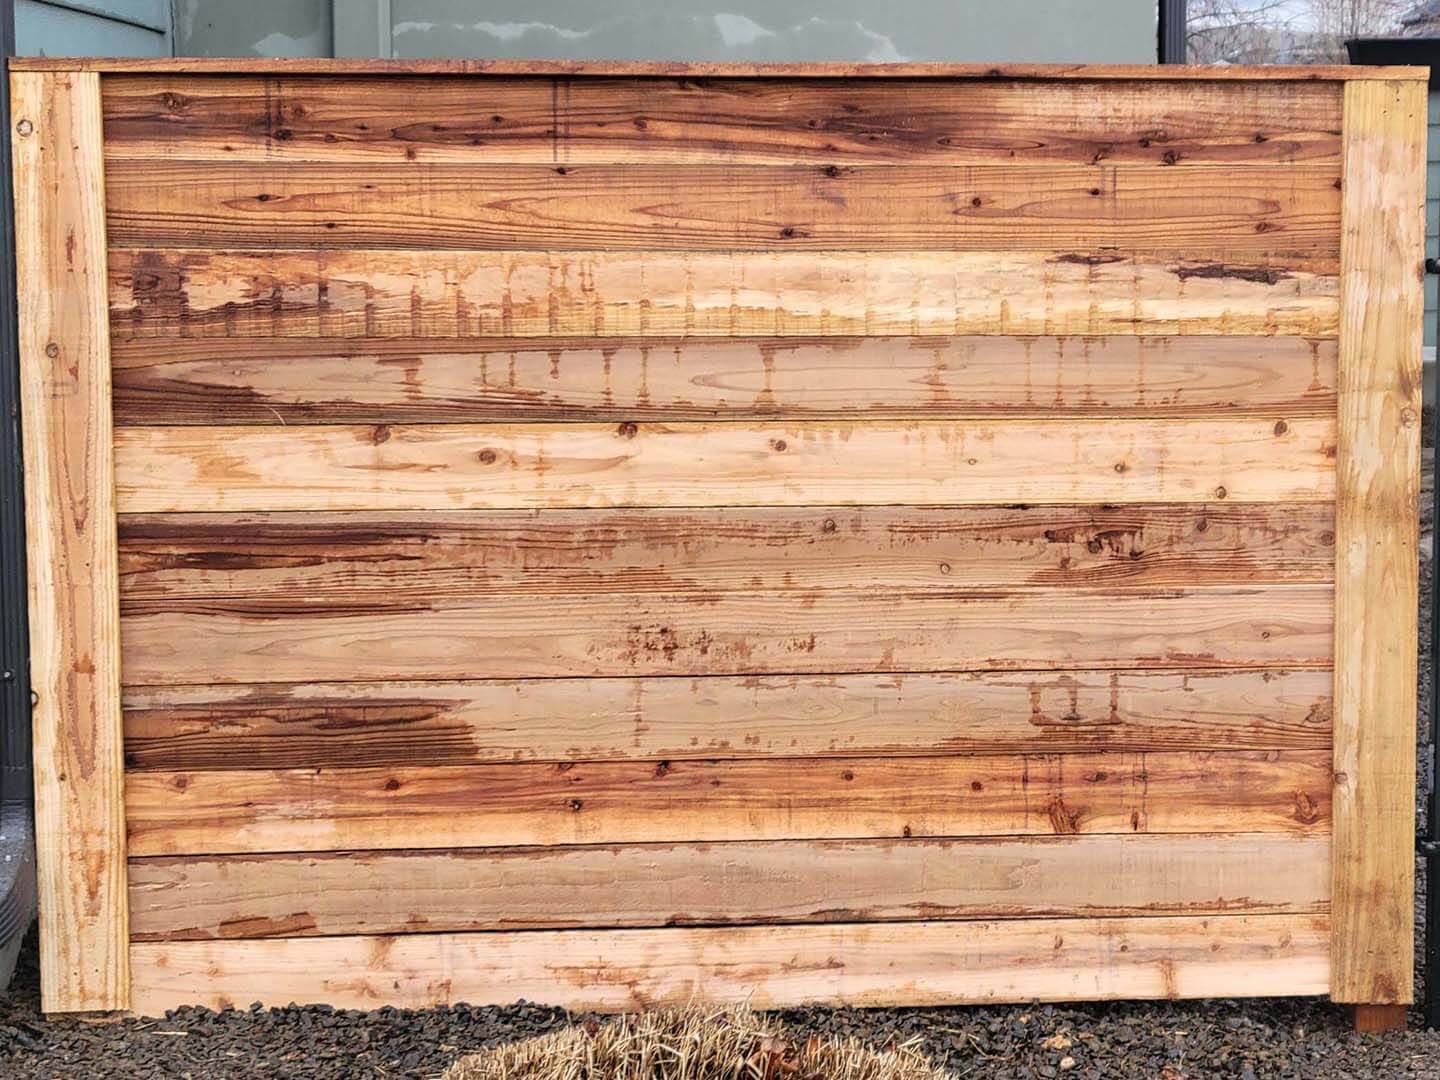 Commercial Wood Fence - Boise Idaho